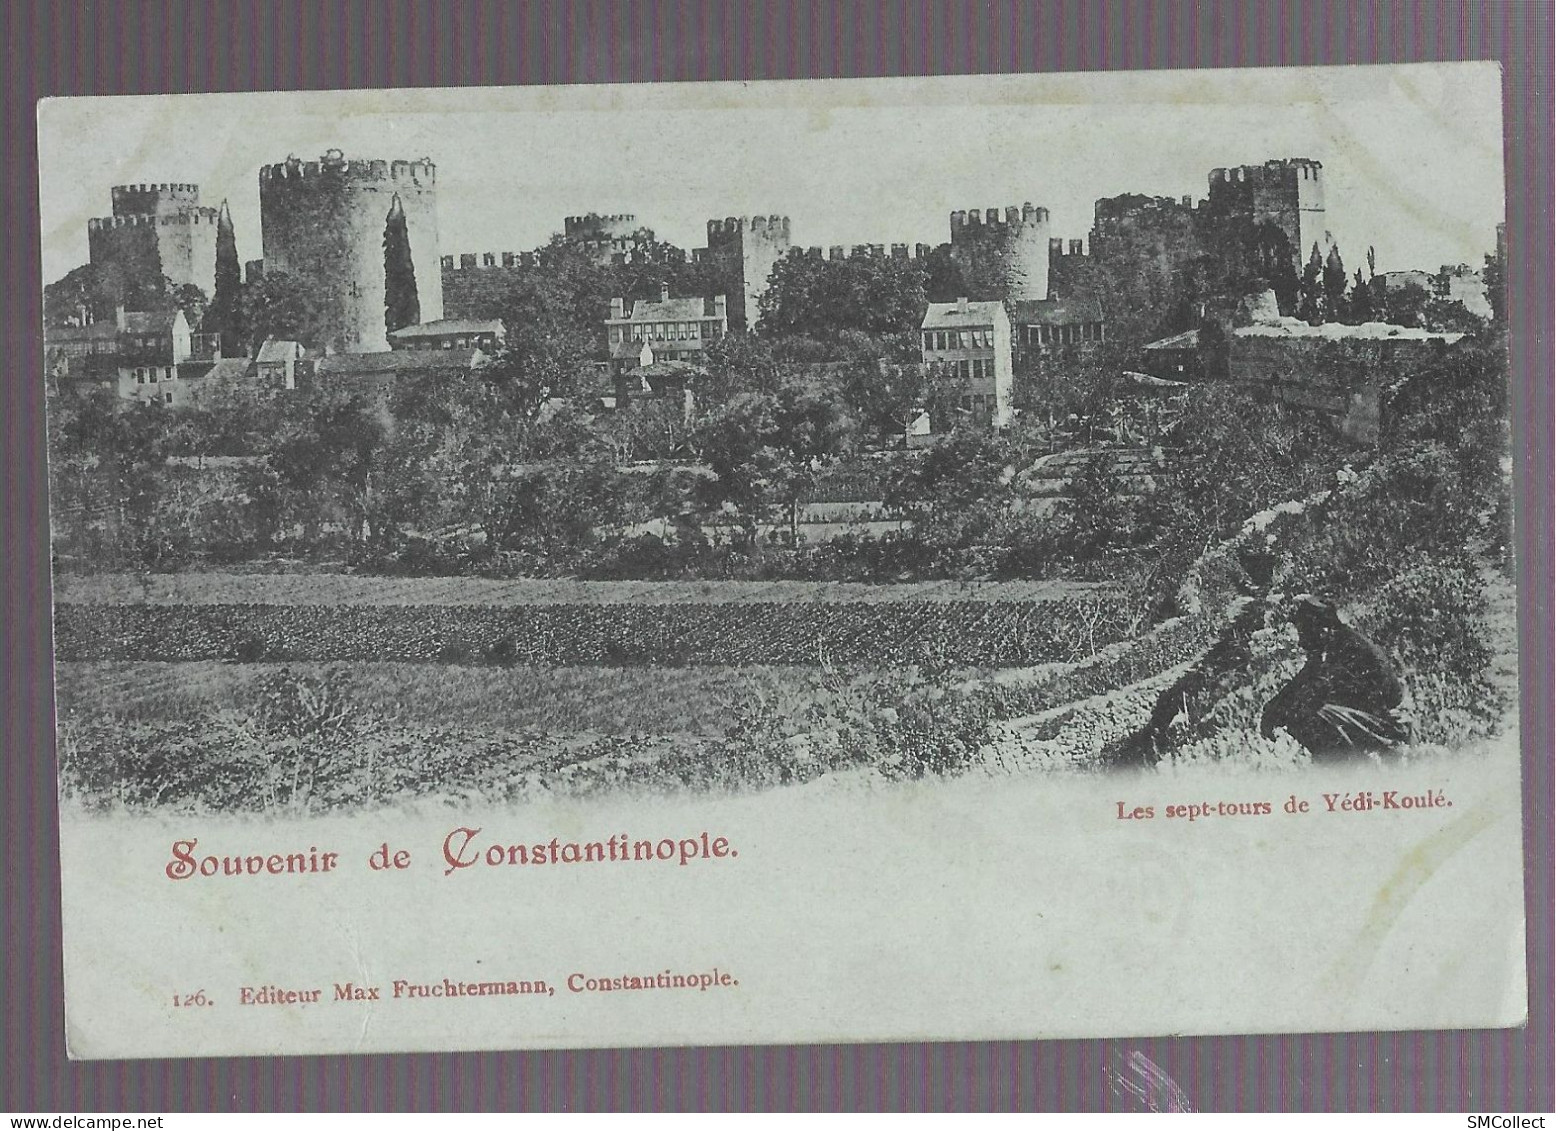 VOIR DESCRIPTION. Souvenir De Constantinople, Les Sept Tours De Yédi-Koulé (9921) - Turkije